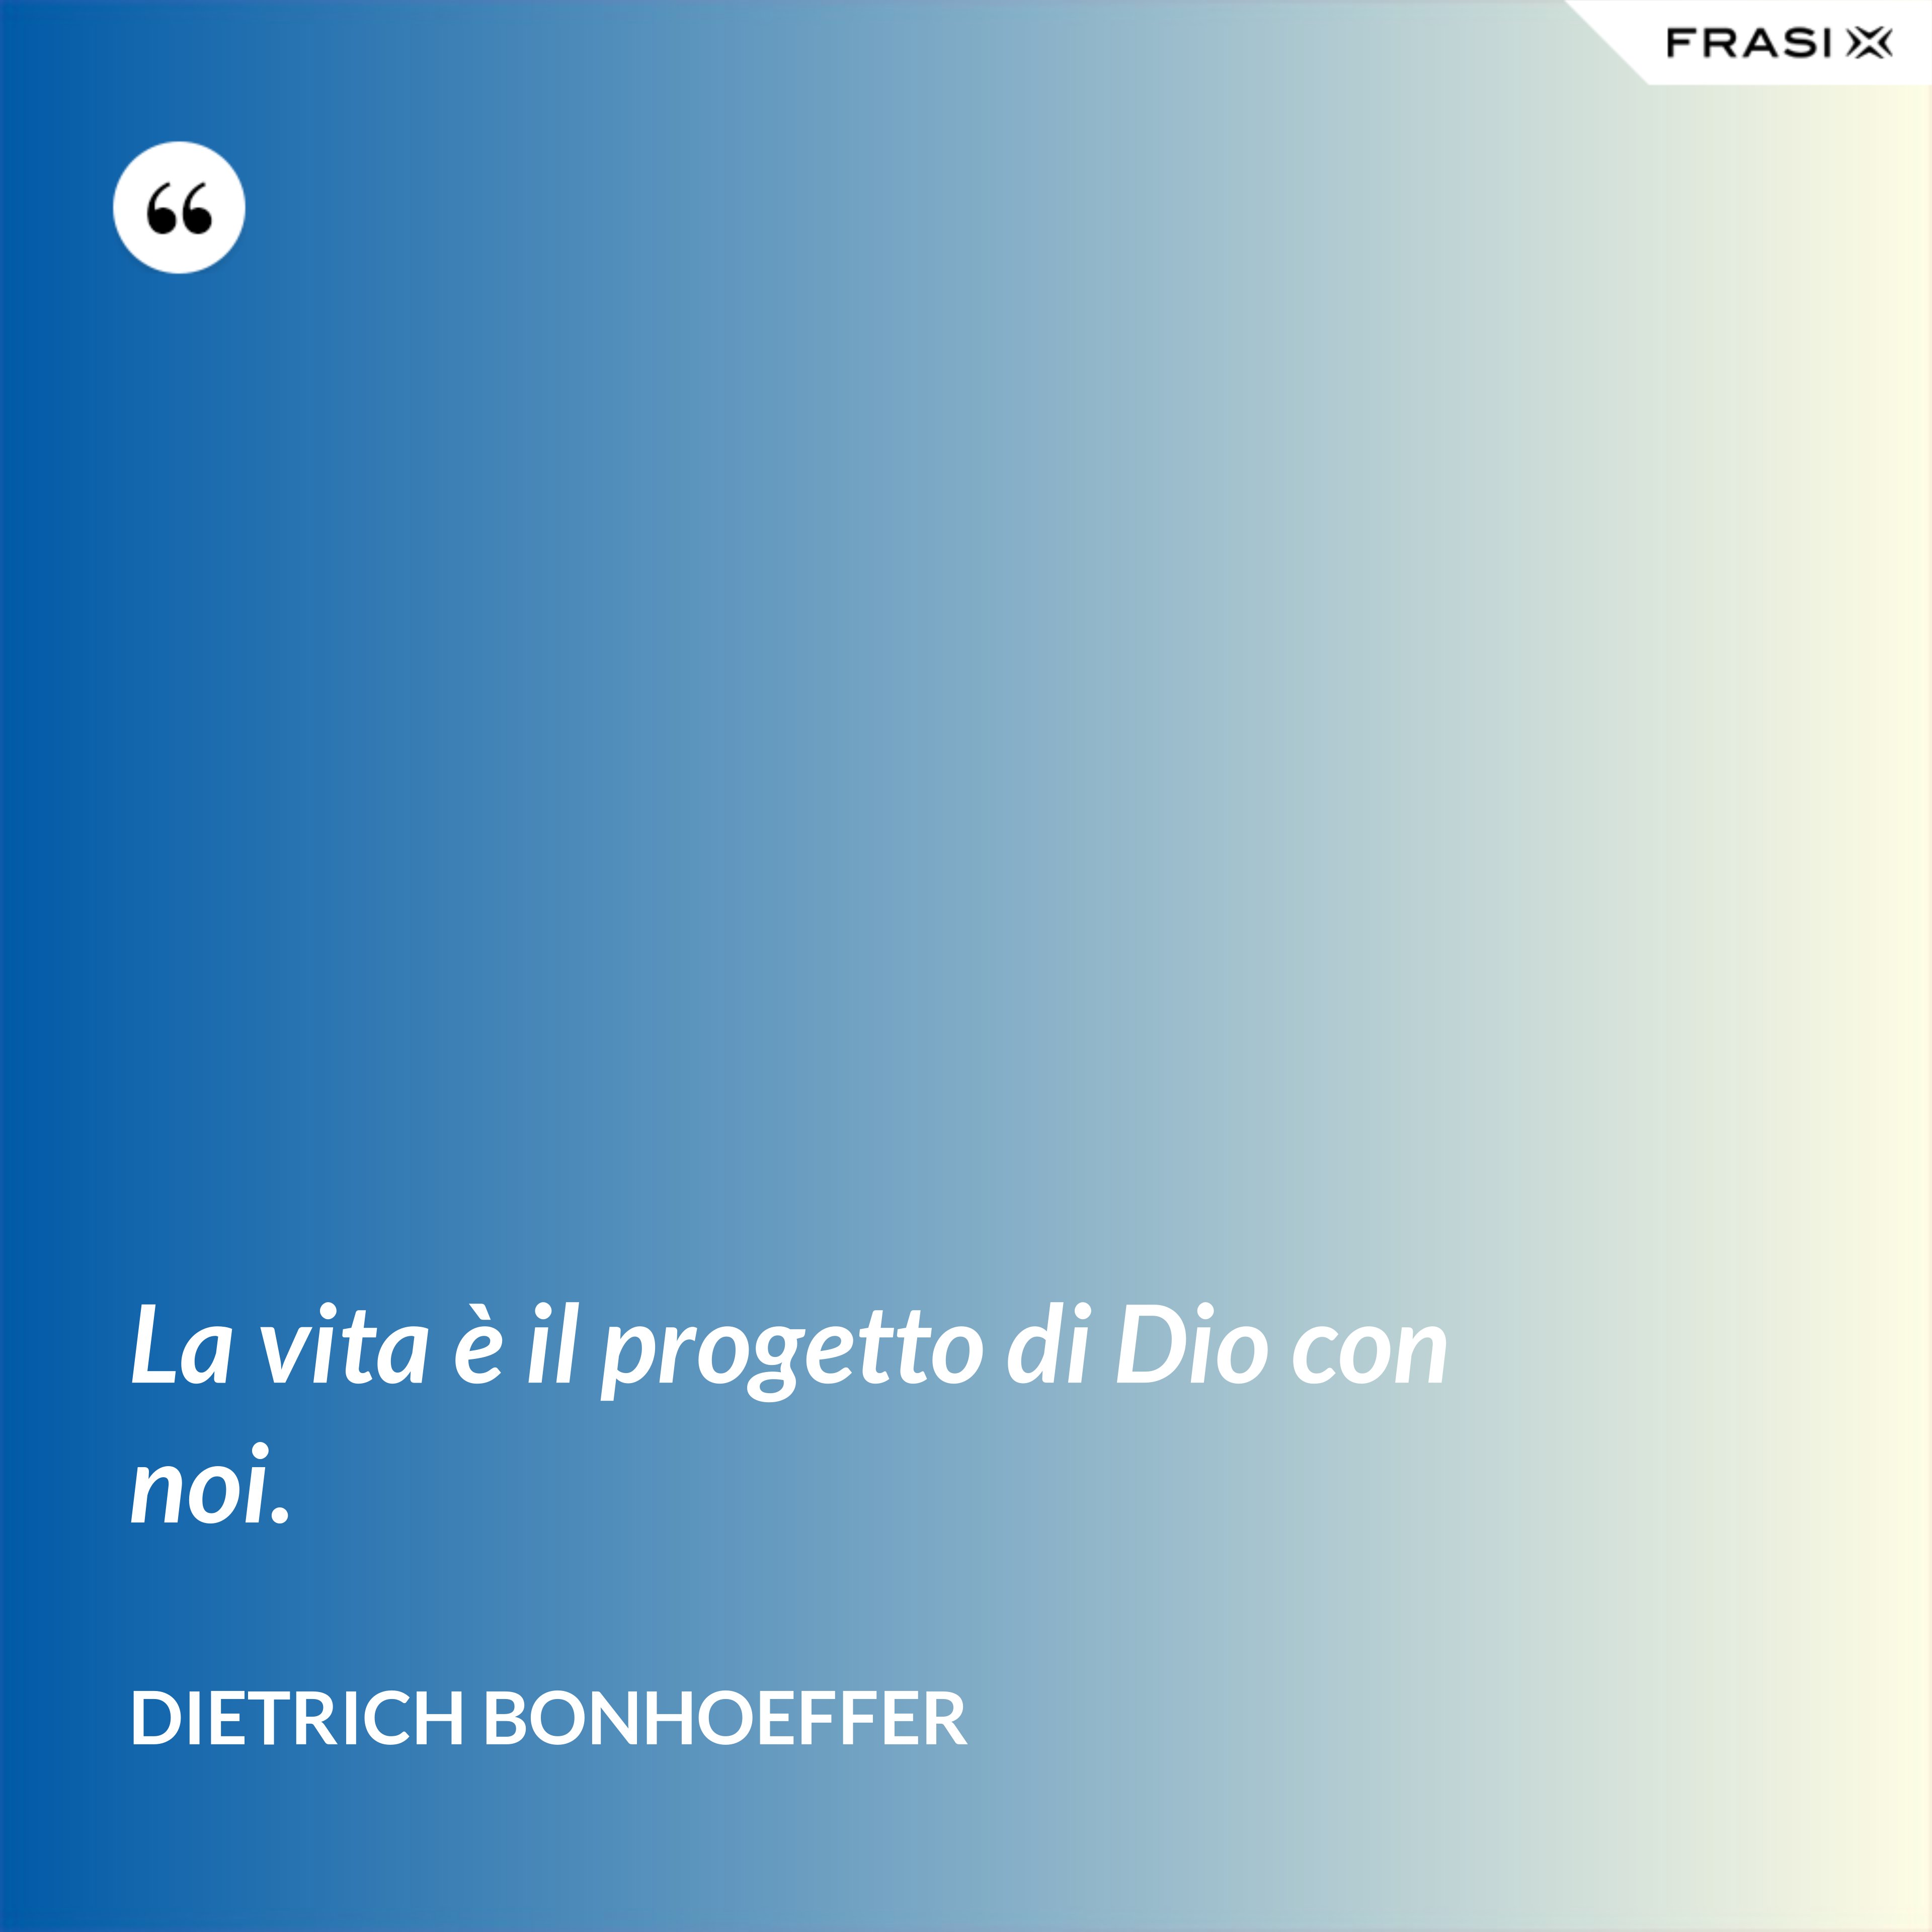 La vita è il progetto di Dio con noi. - Dietrich Bonhoeffer